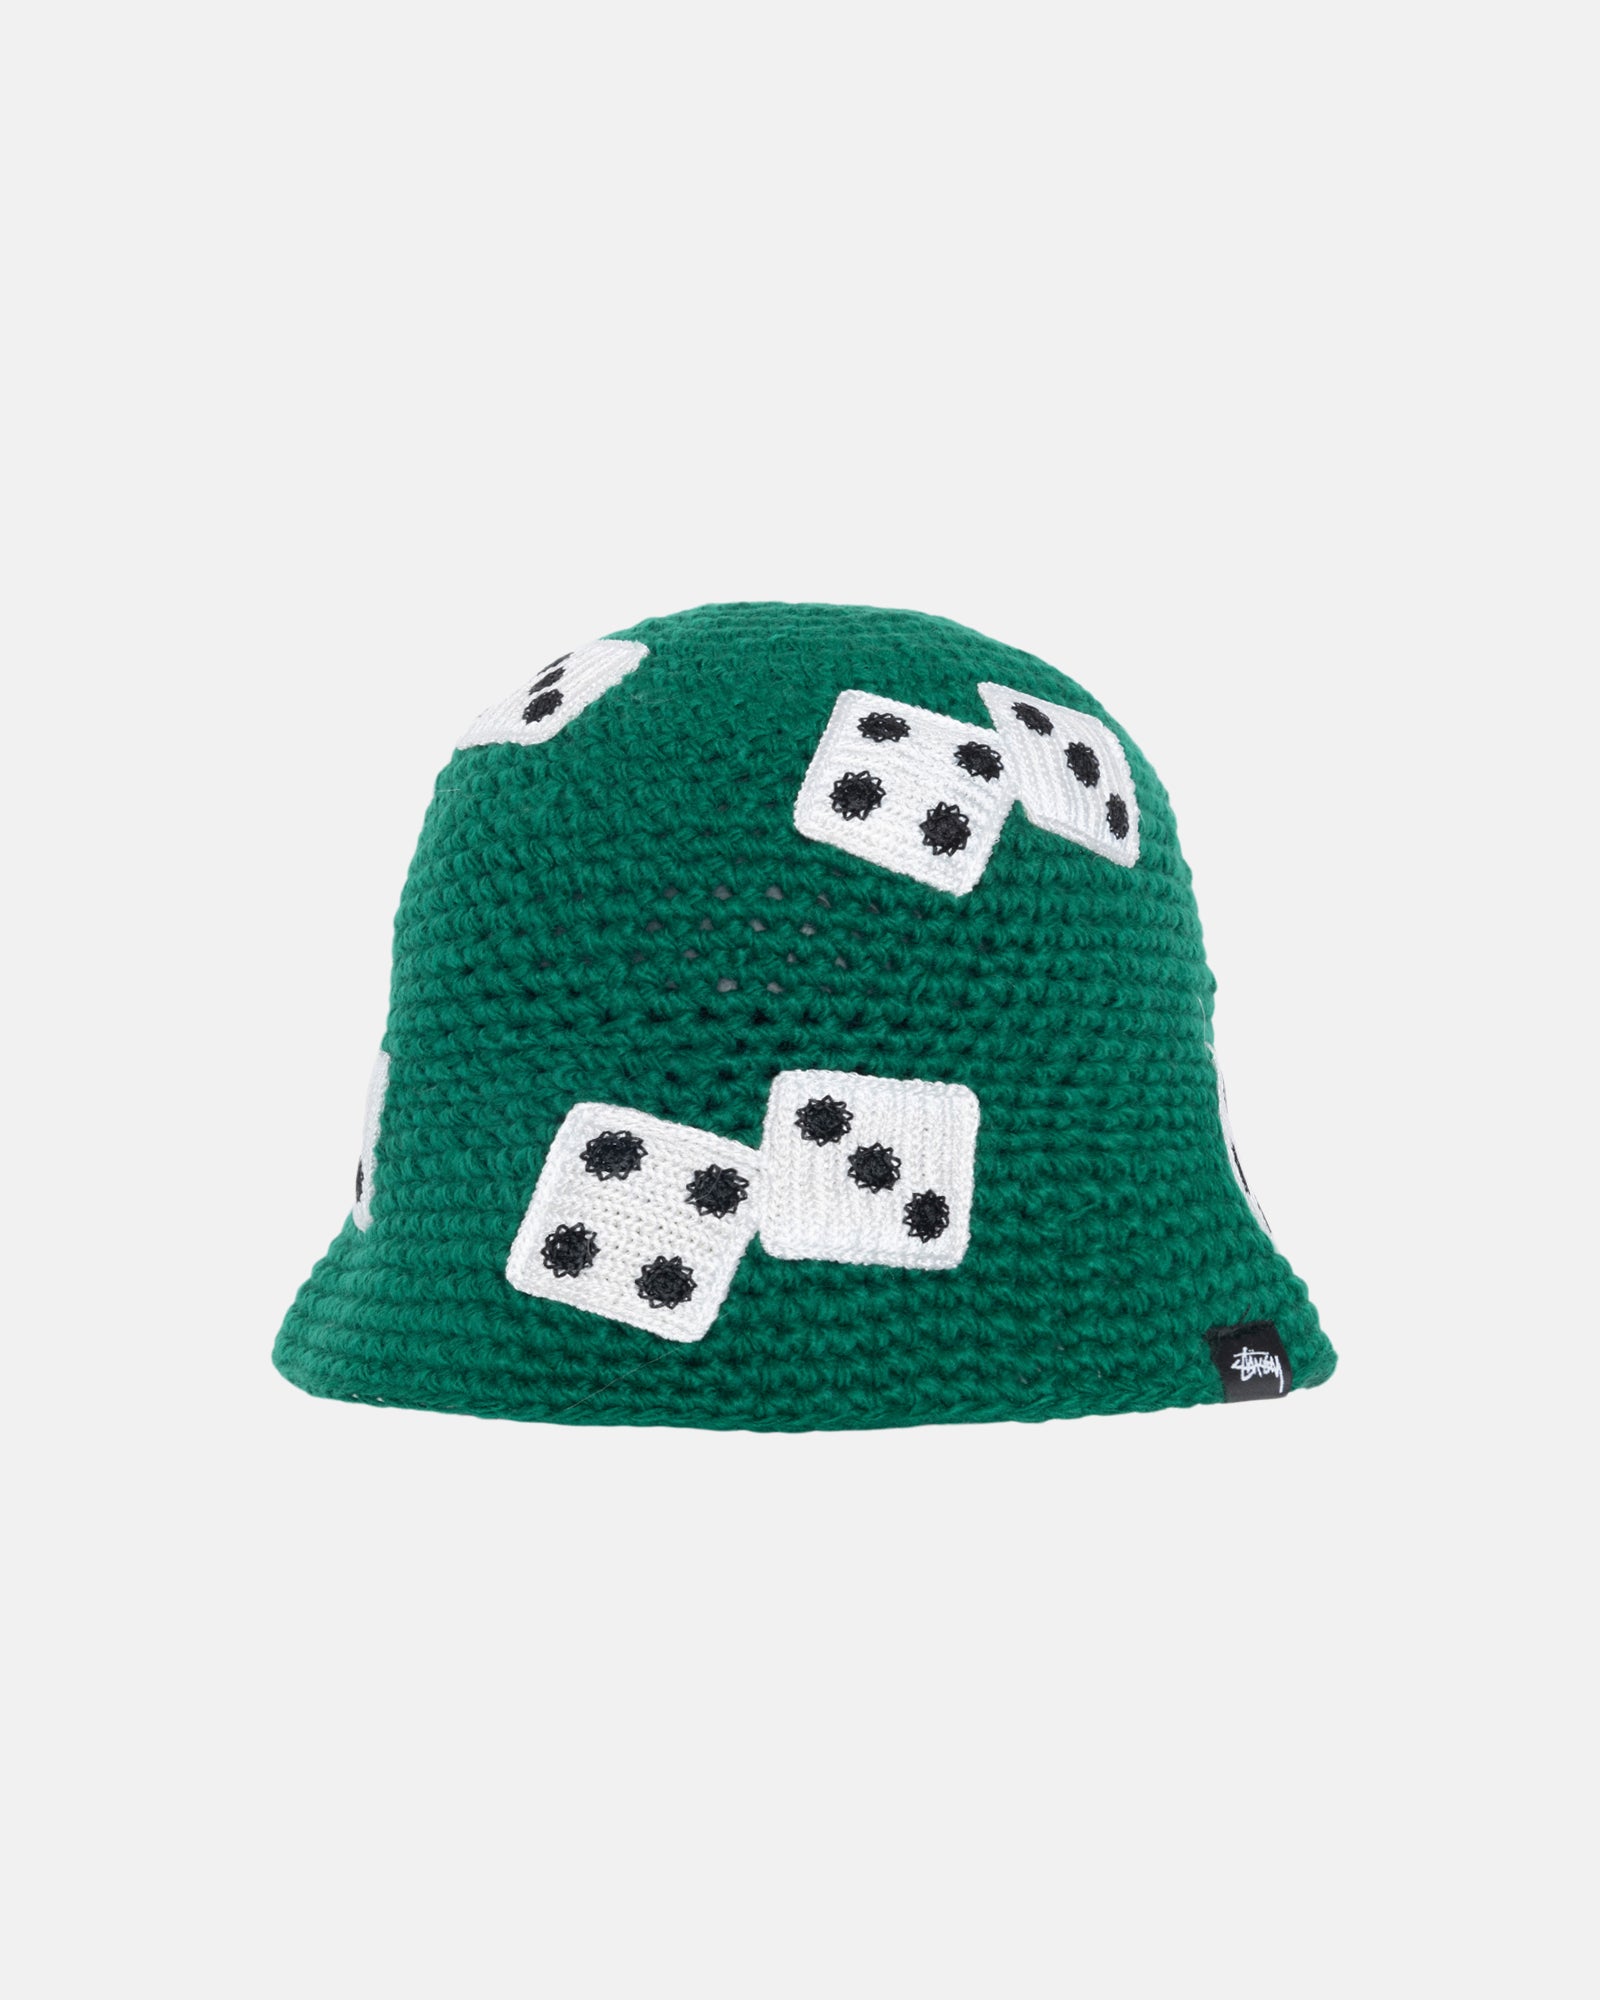 Stüssy Bucket Hat Dice Knit Green Headwear